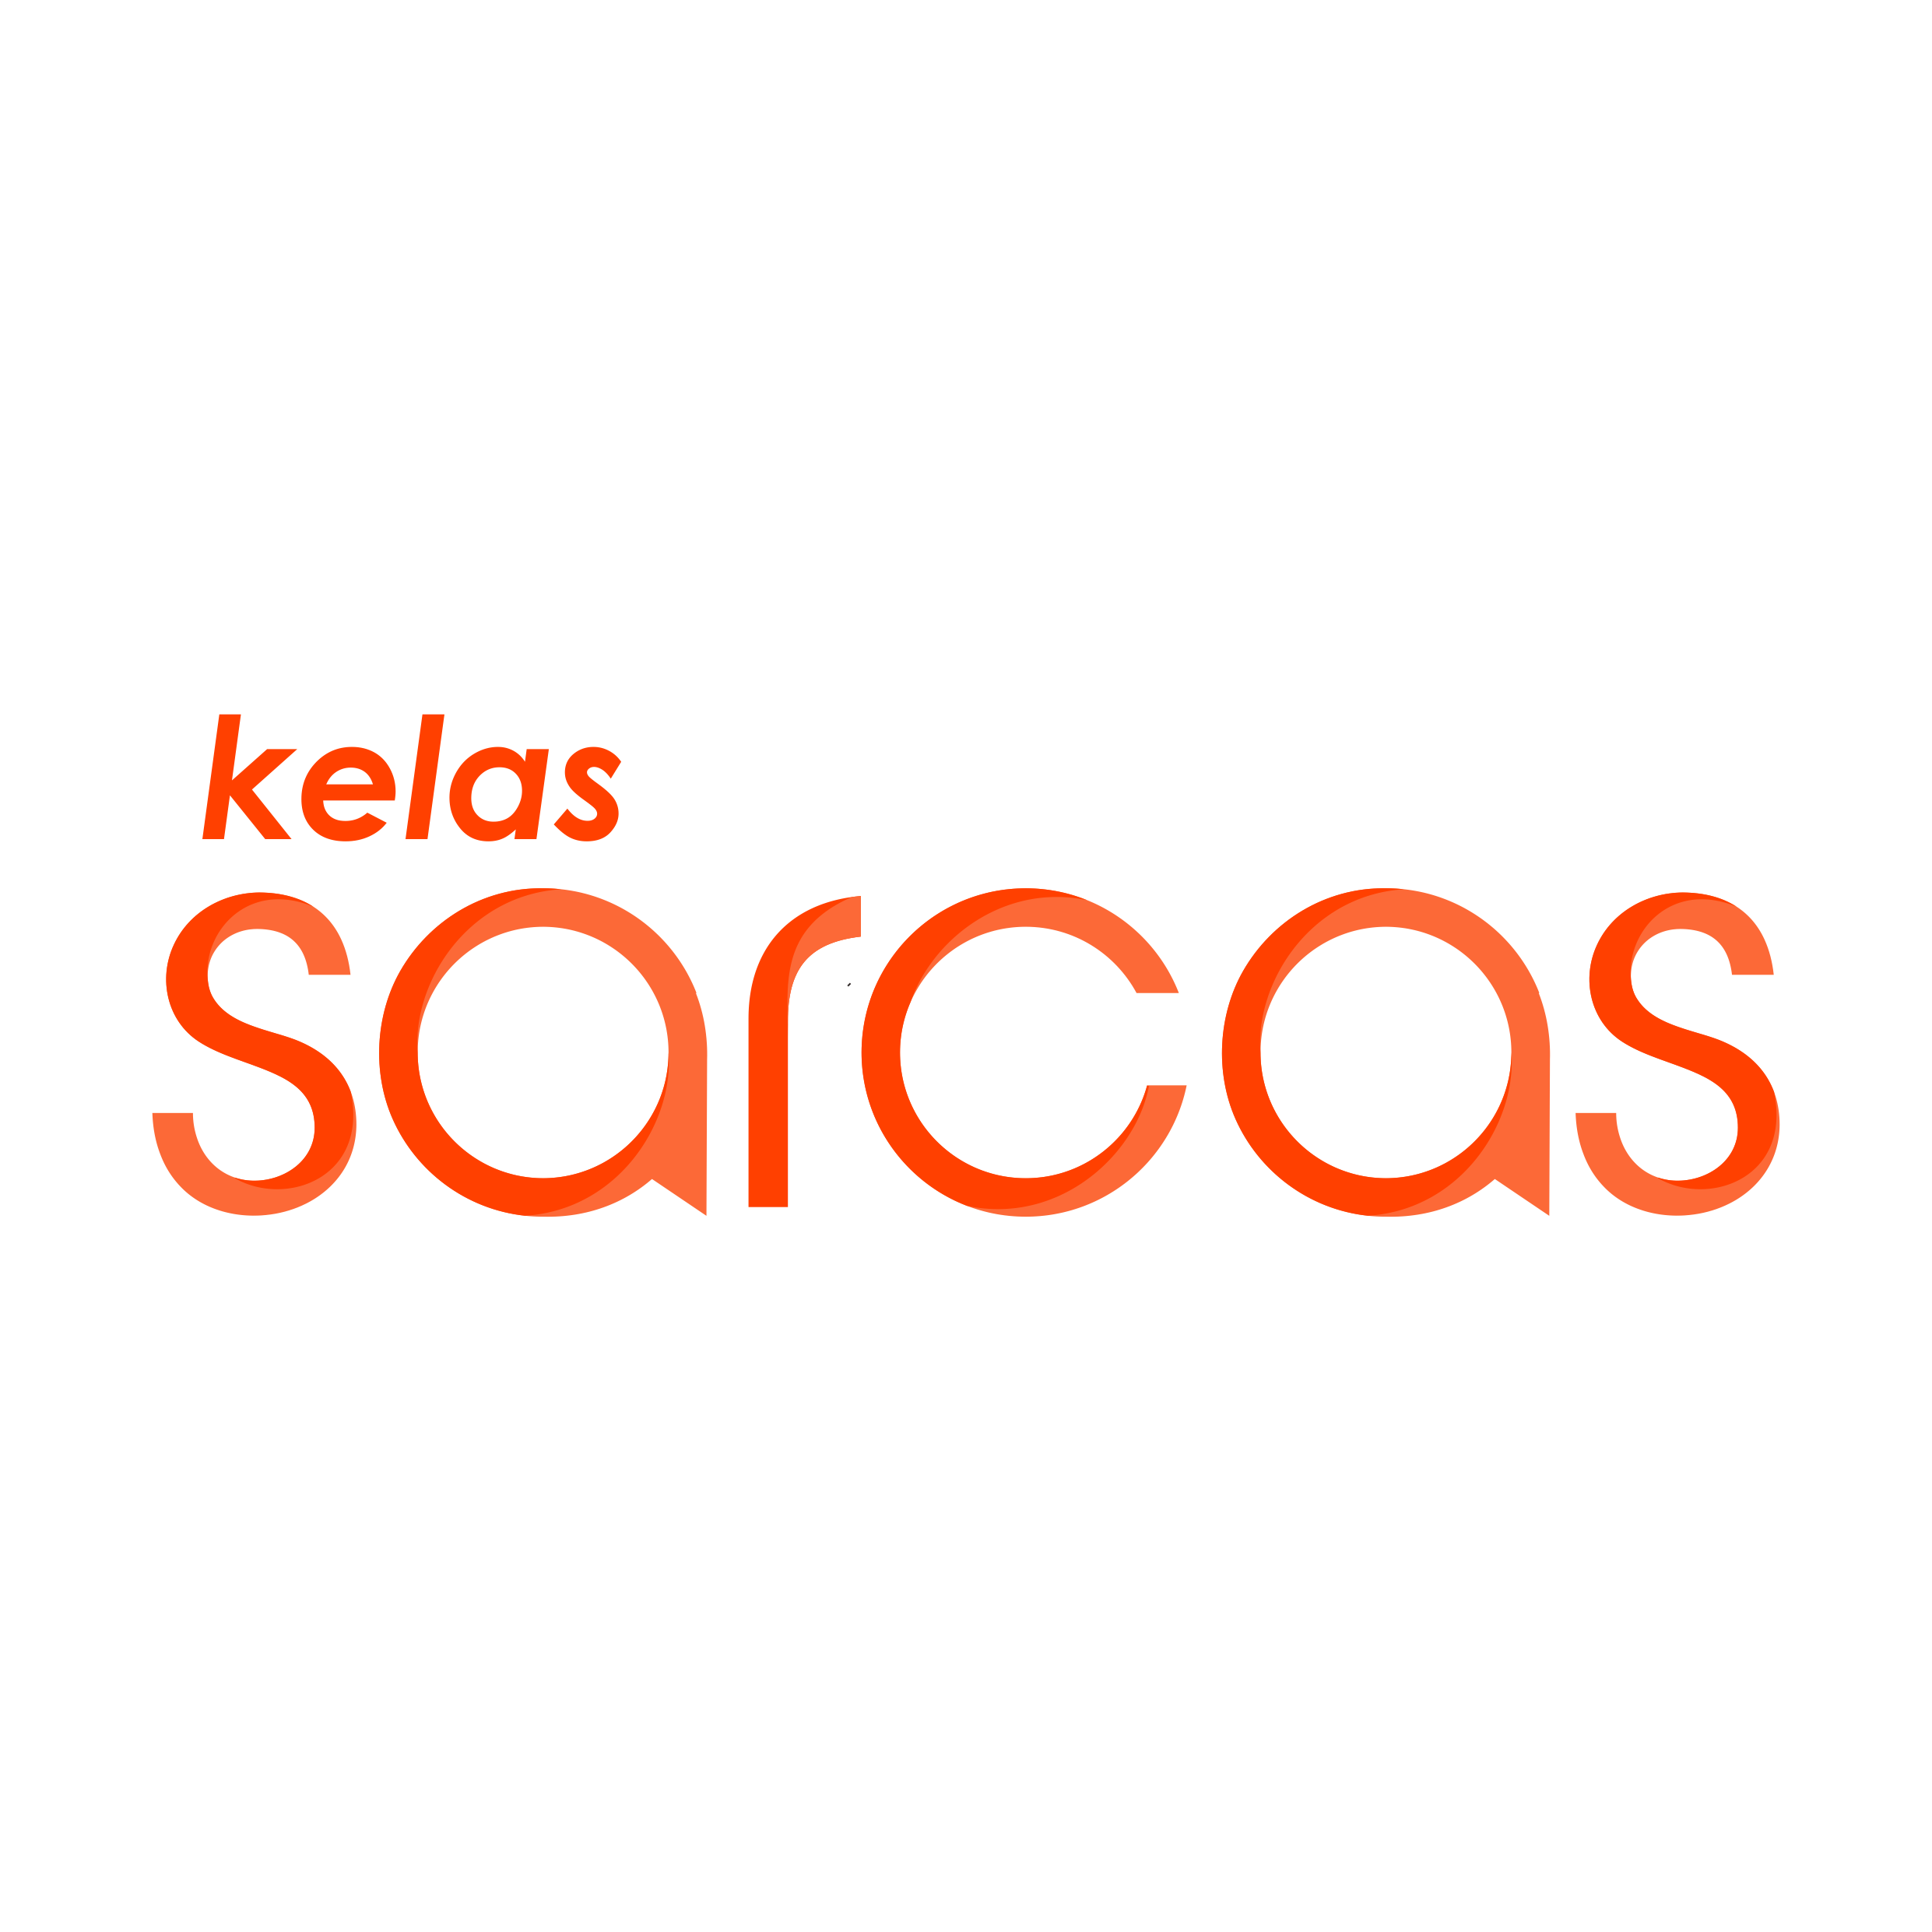 sarcas